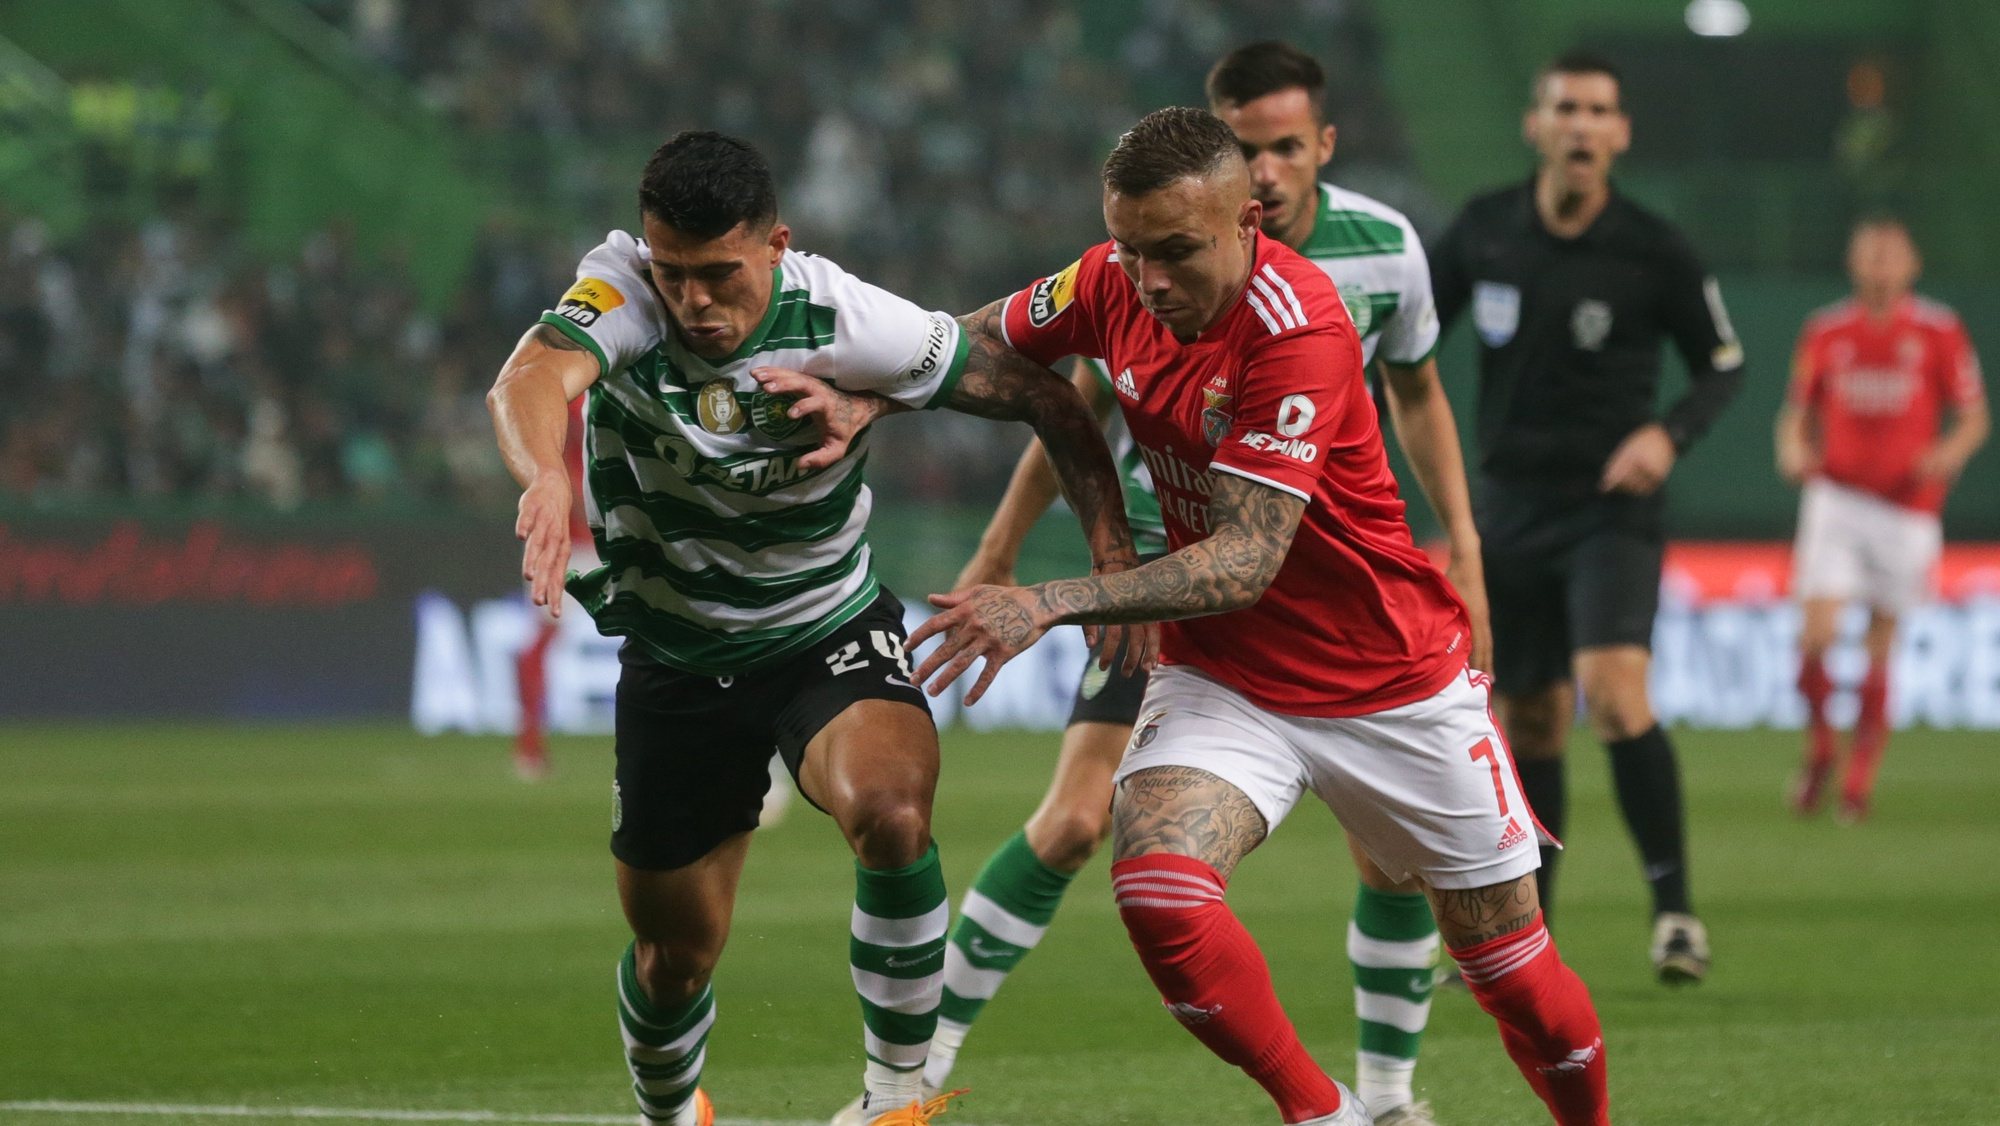 Mafra-Benfica, 0-1: águia voa à altura mínima - Liga Revelação